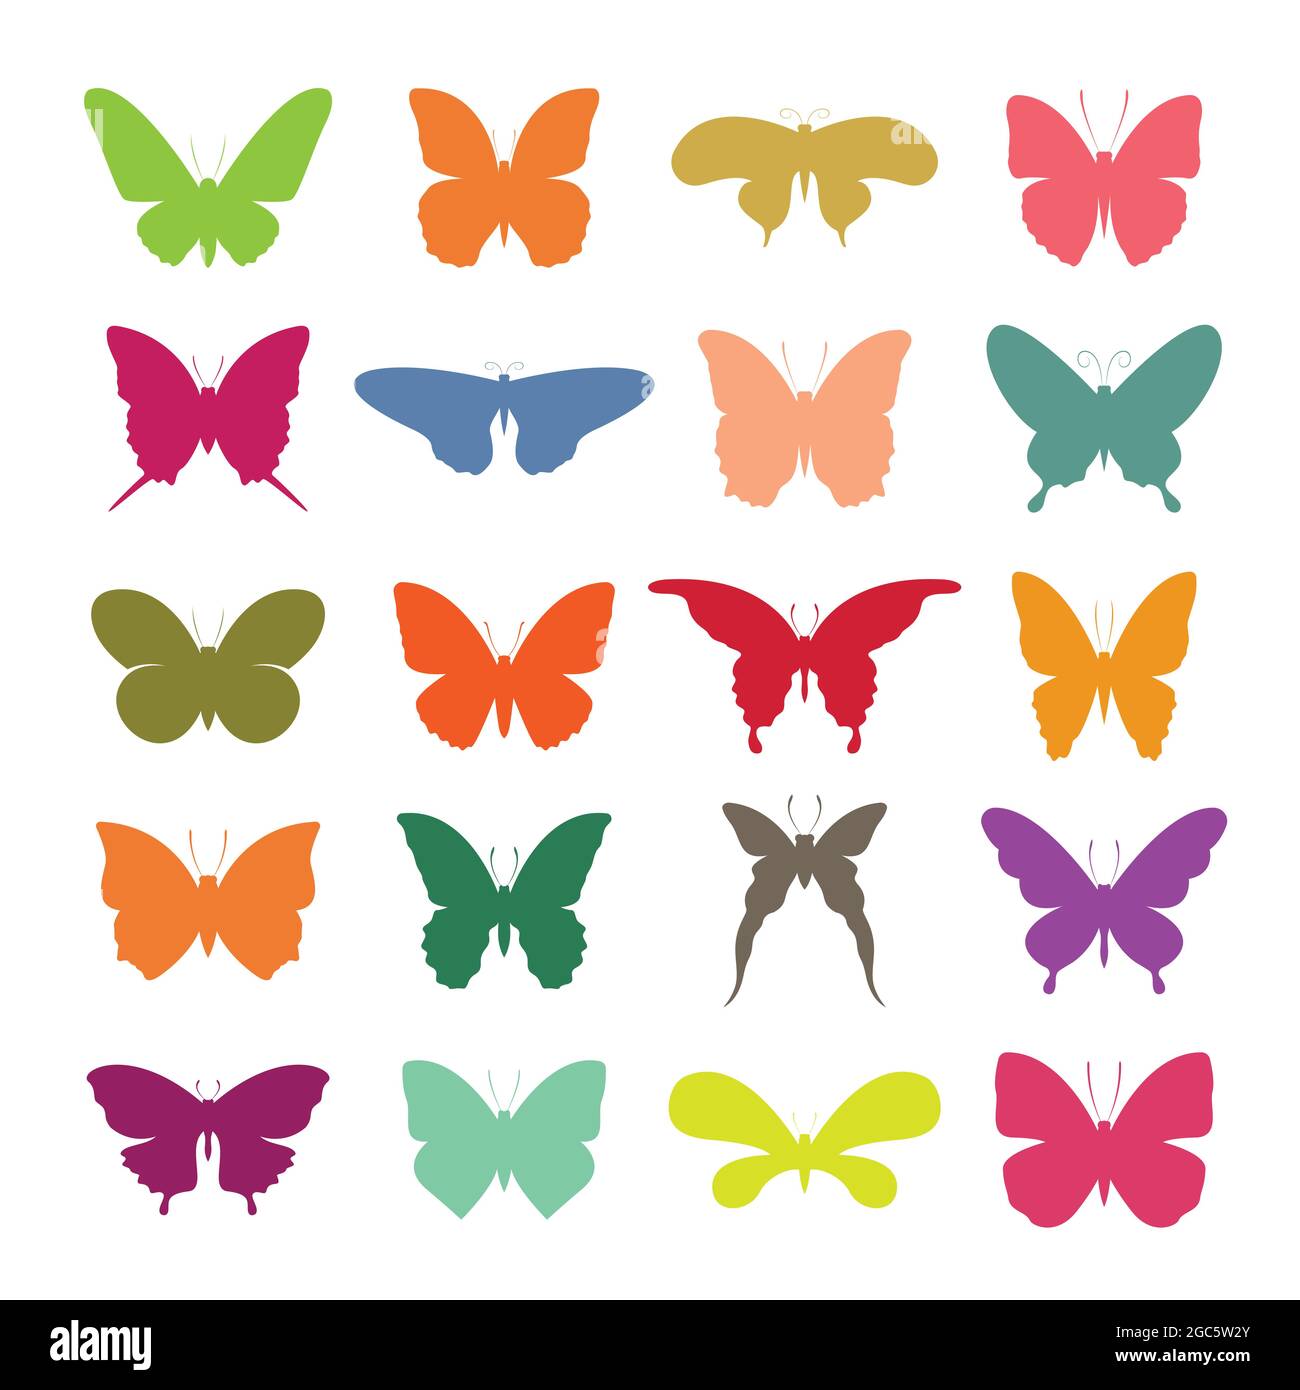 mariposa dibujo facil color